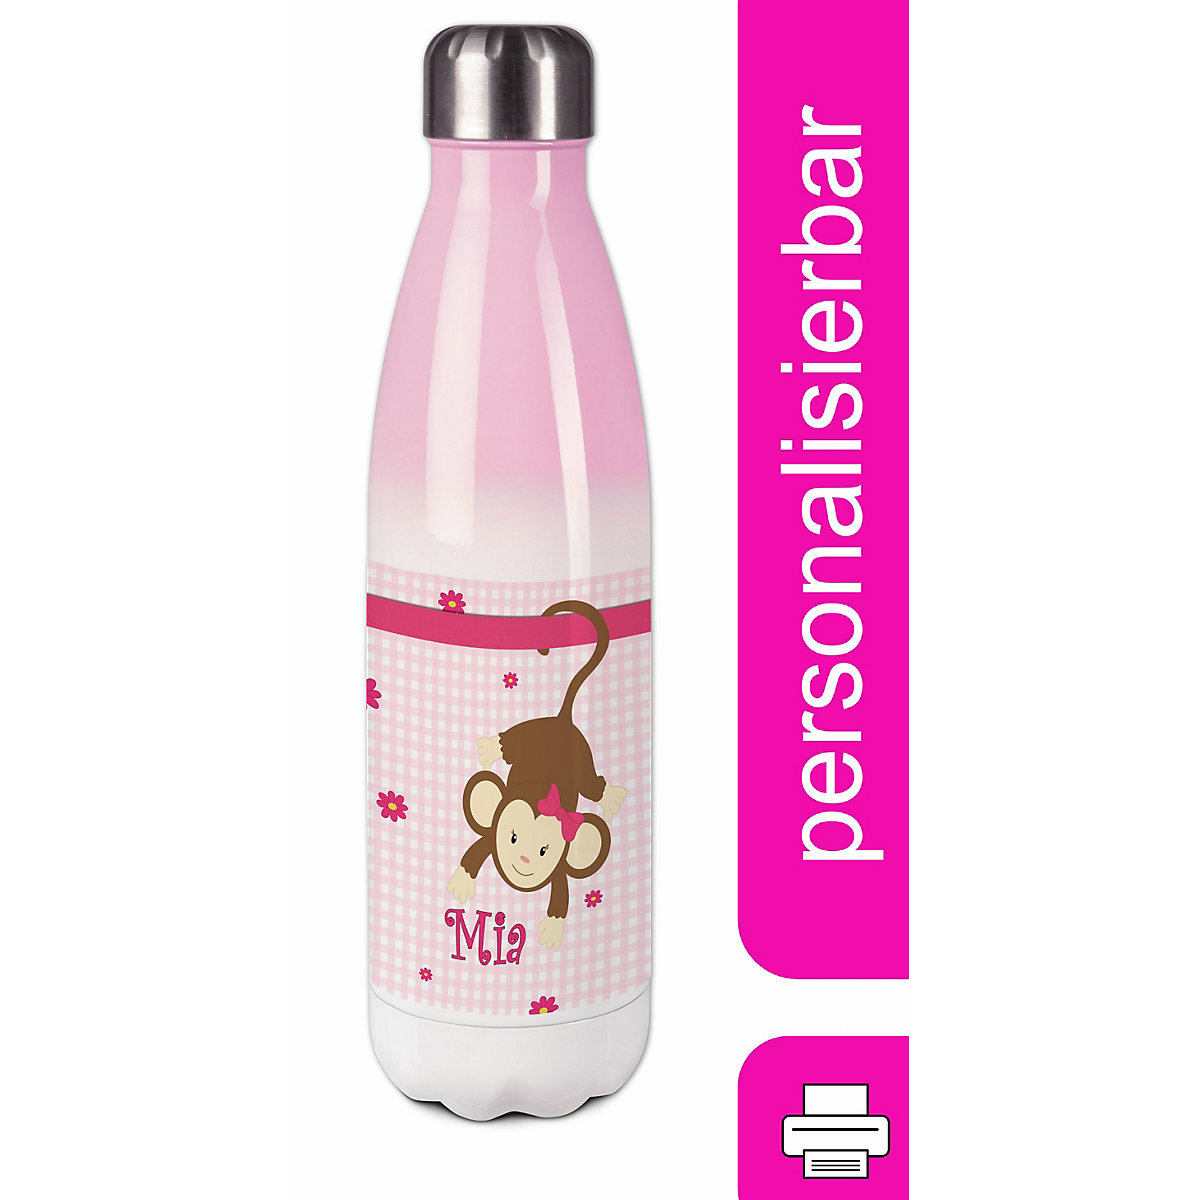 CreaDesign Edelstahl Kinder Thermoflasche / Trinkflasche bunt Affe hängend Farbe rosa Spülmaschinenfest Auslaufsicher Bruchfest Doppelwandig Für Heißgetränke geeignet Mit Deckel Isoliert